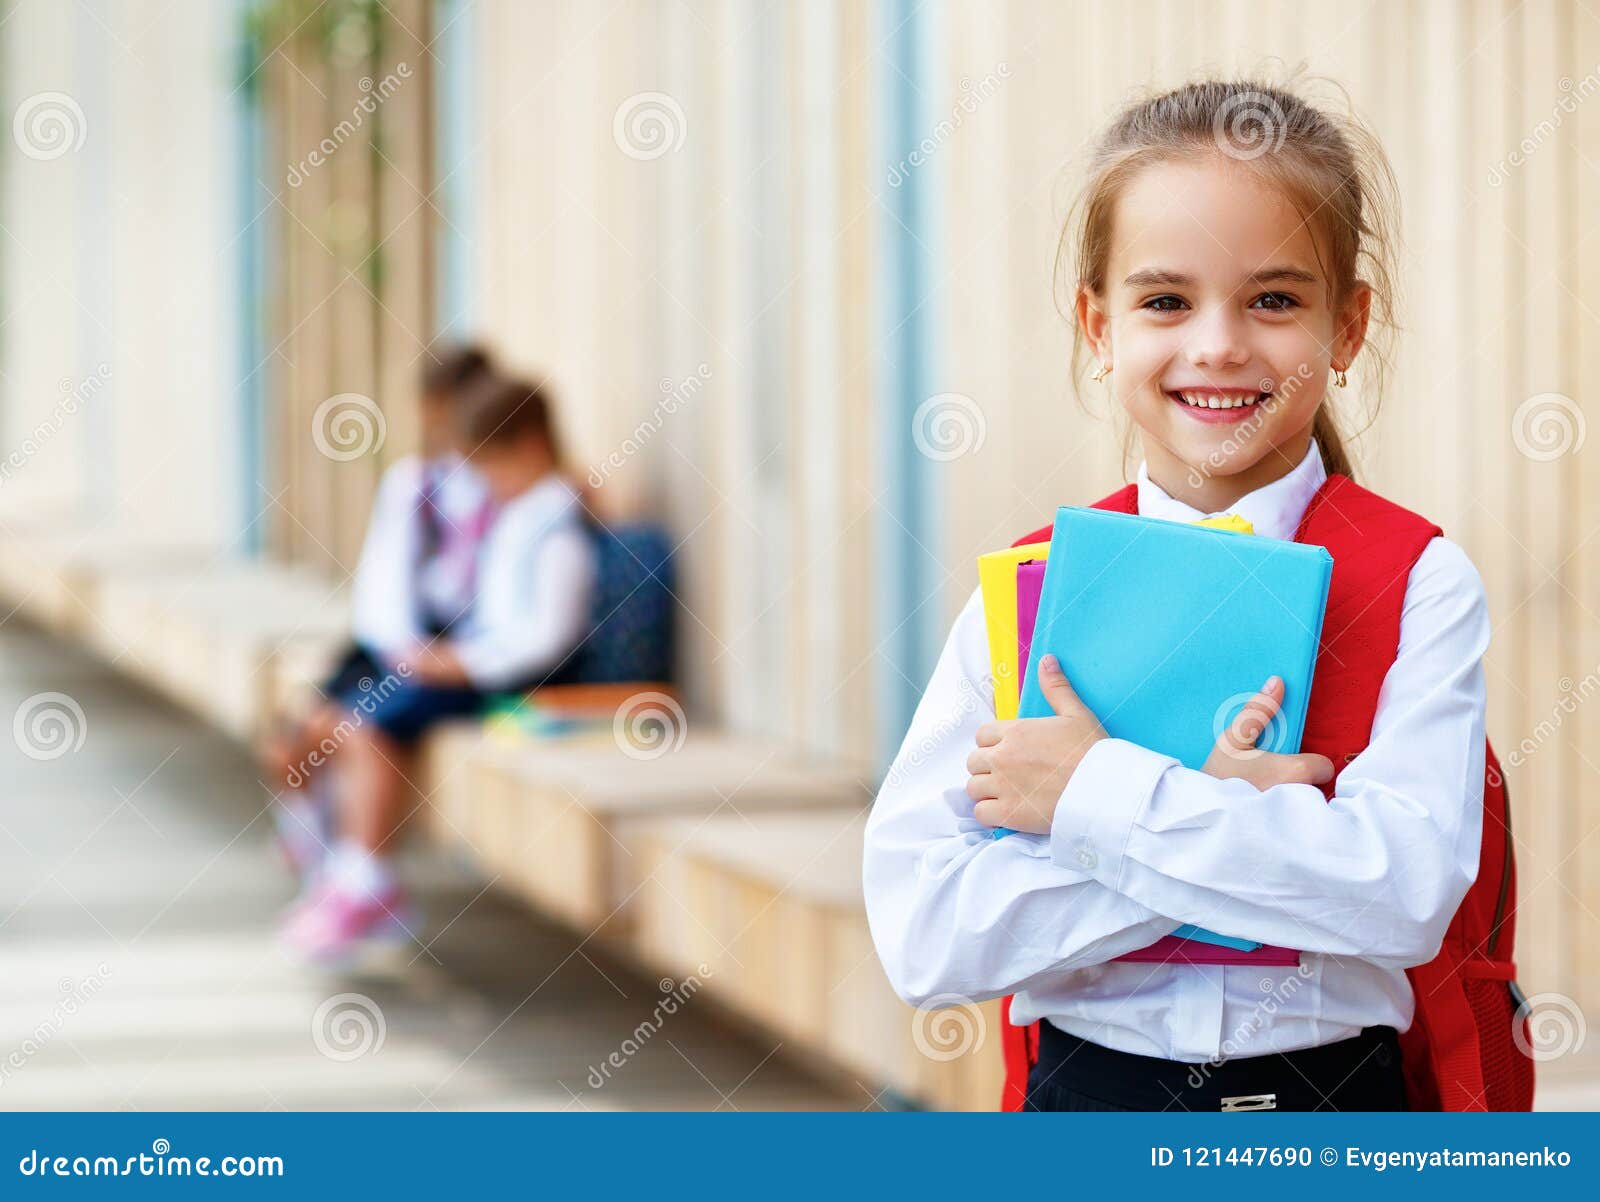 happy children girlfriend schoolgirl student ary school